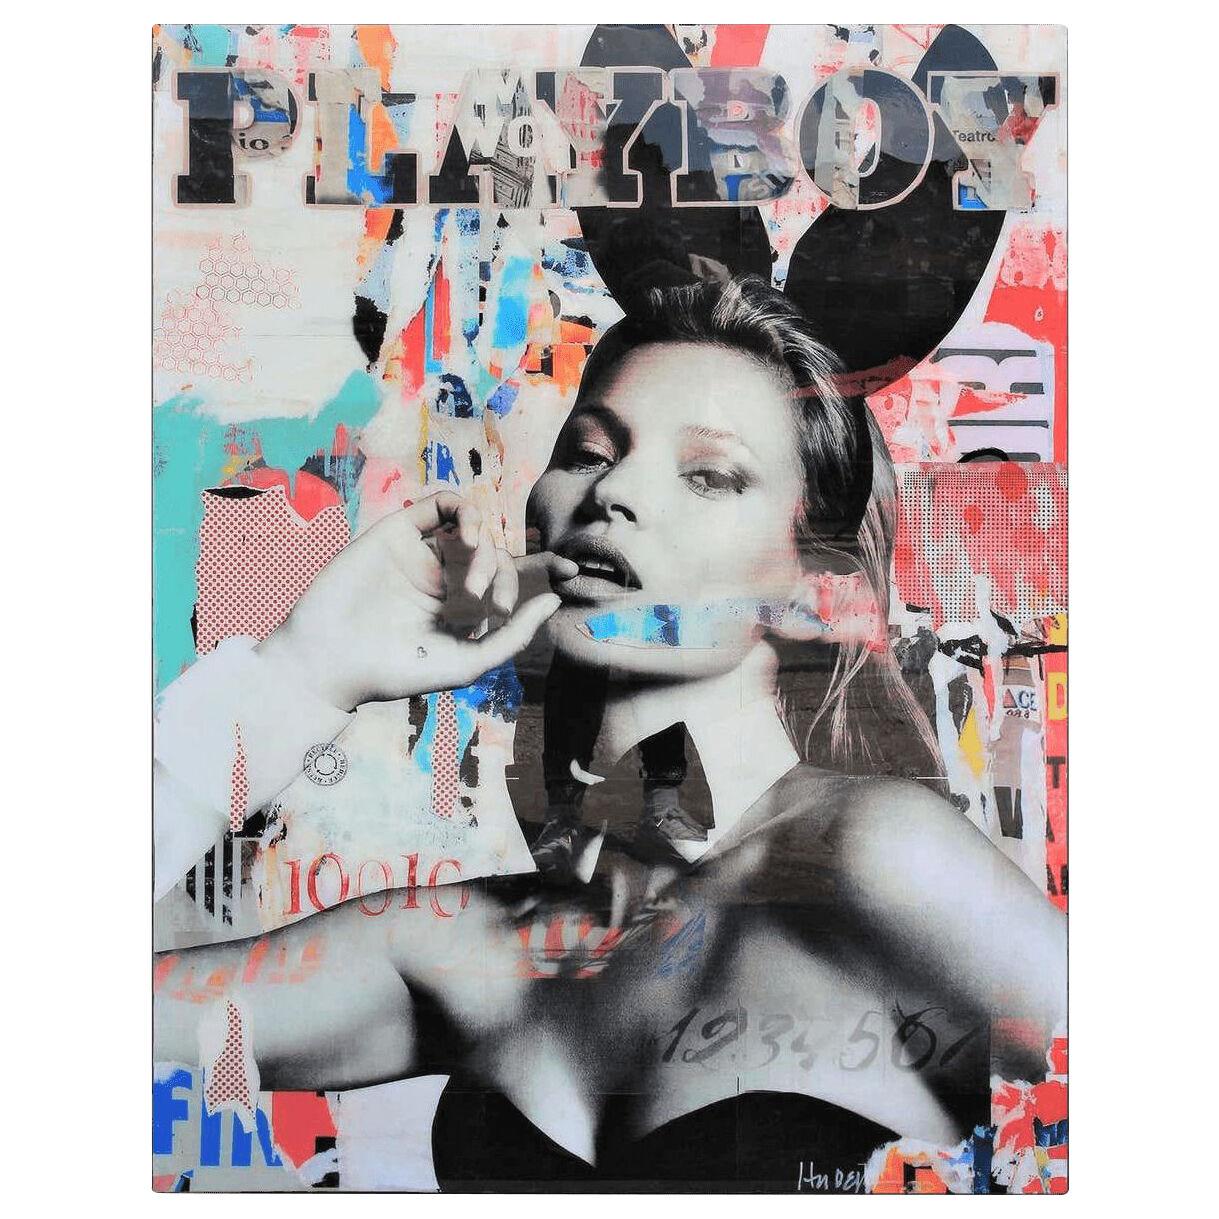 J Hudek "Bunny Cover Girl" Kate Moss Mixed Media Pop Art Resin Collage 21st C